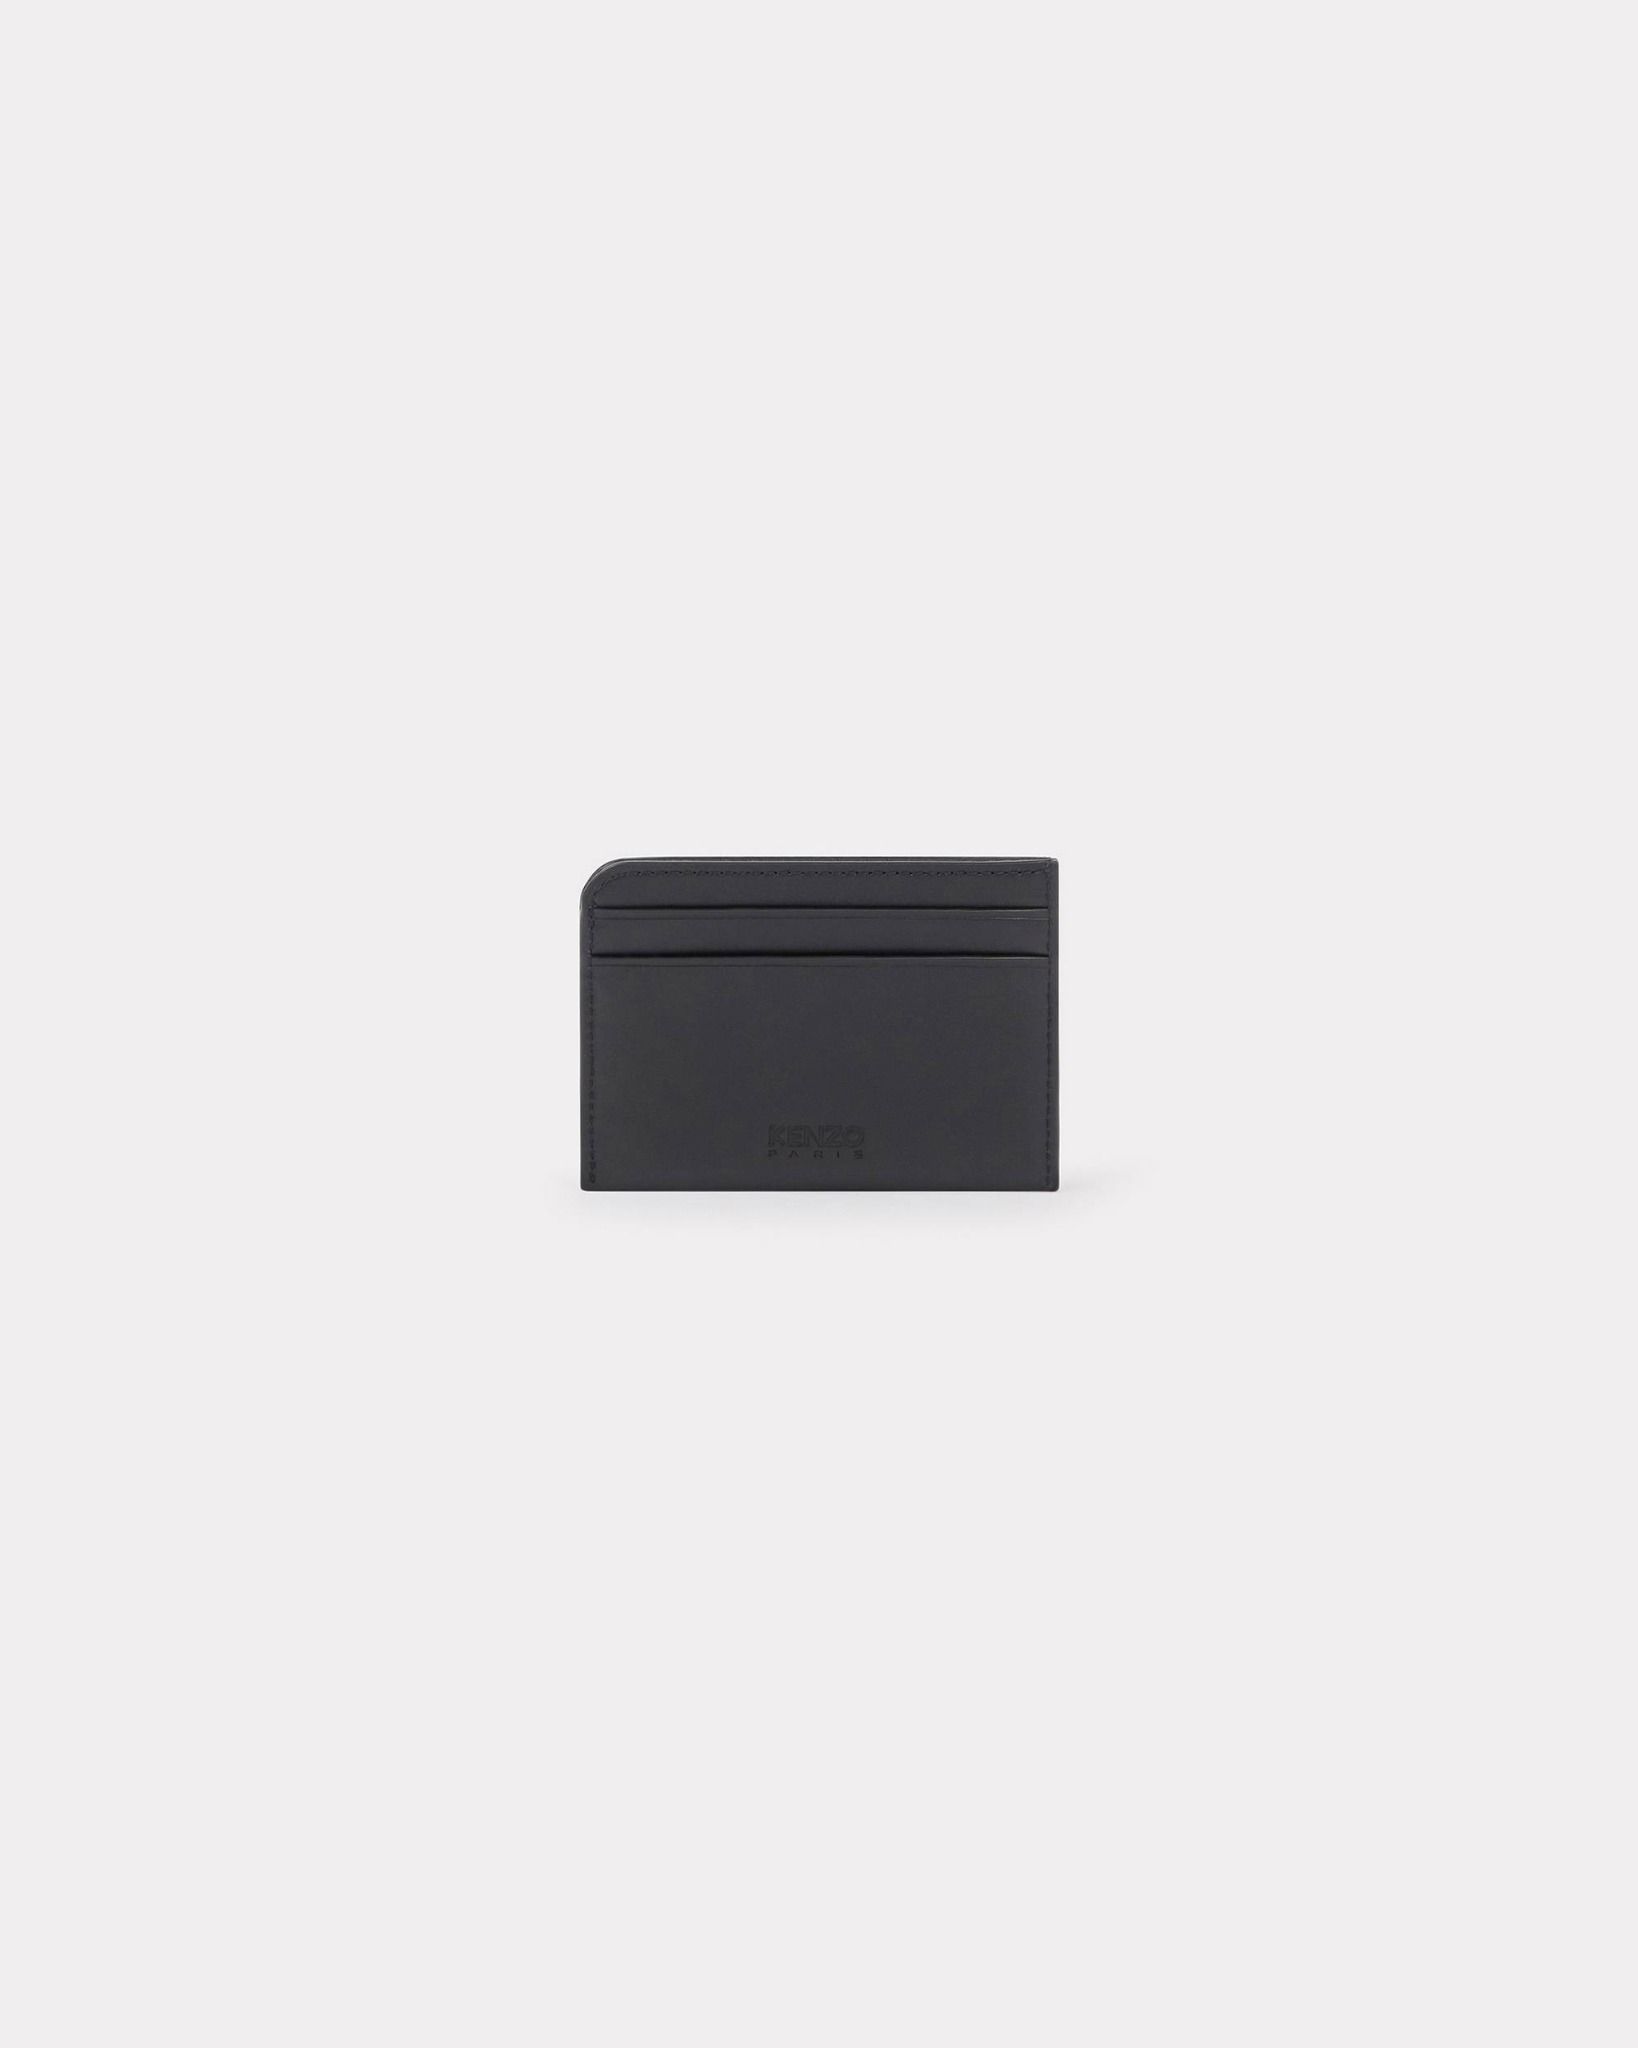  Ví Kenzo 'Kenzo Stamp' Leather Card Holder 'Black' 